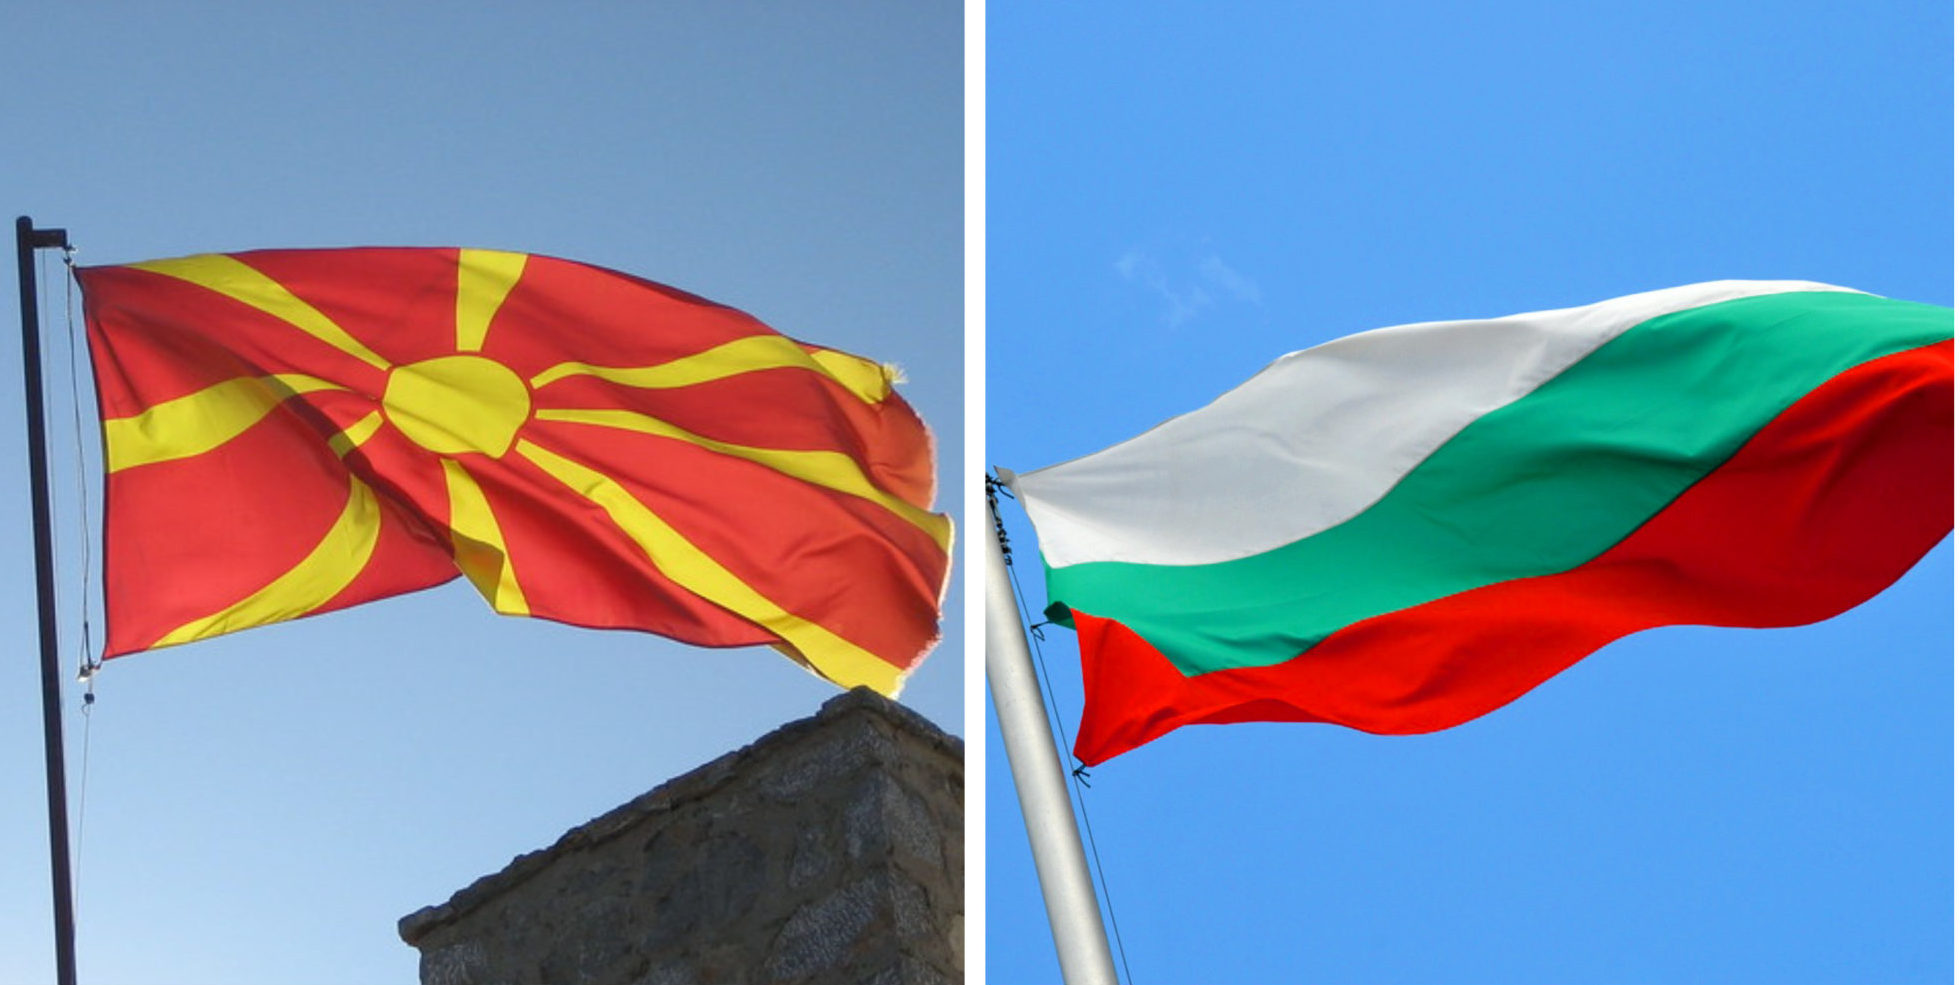 Βέτο όπου τους «βρίσκει» η Βουλγαρία – Μπλοκάρισε την συμφωνία Σκοπίων-Frontex γιατί αναφέρουν «μακεδονική γλώσσα»